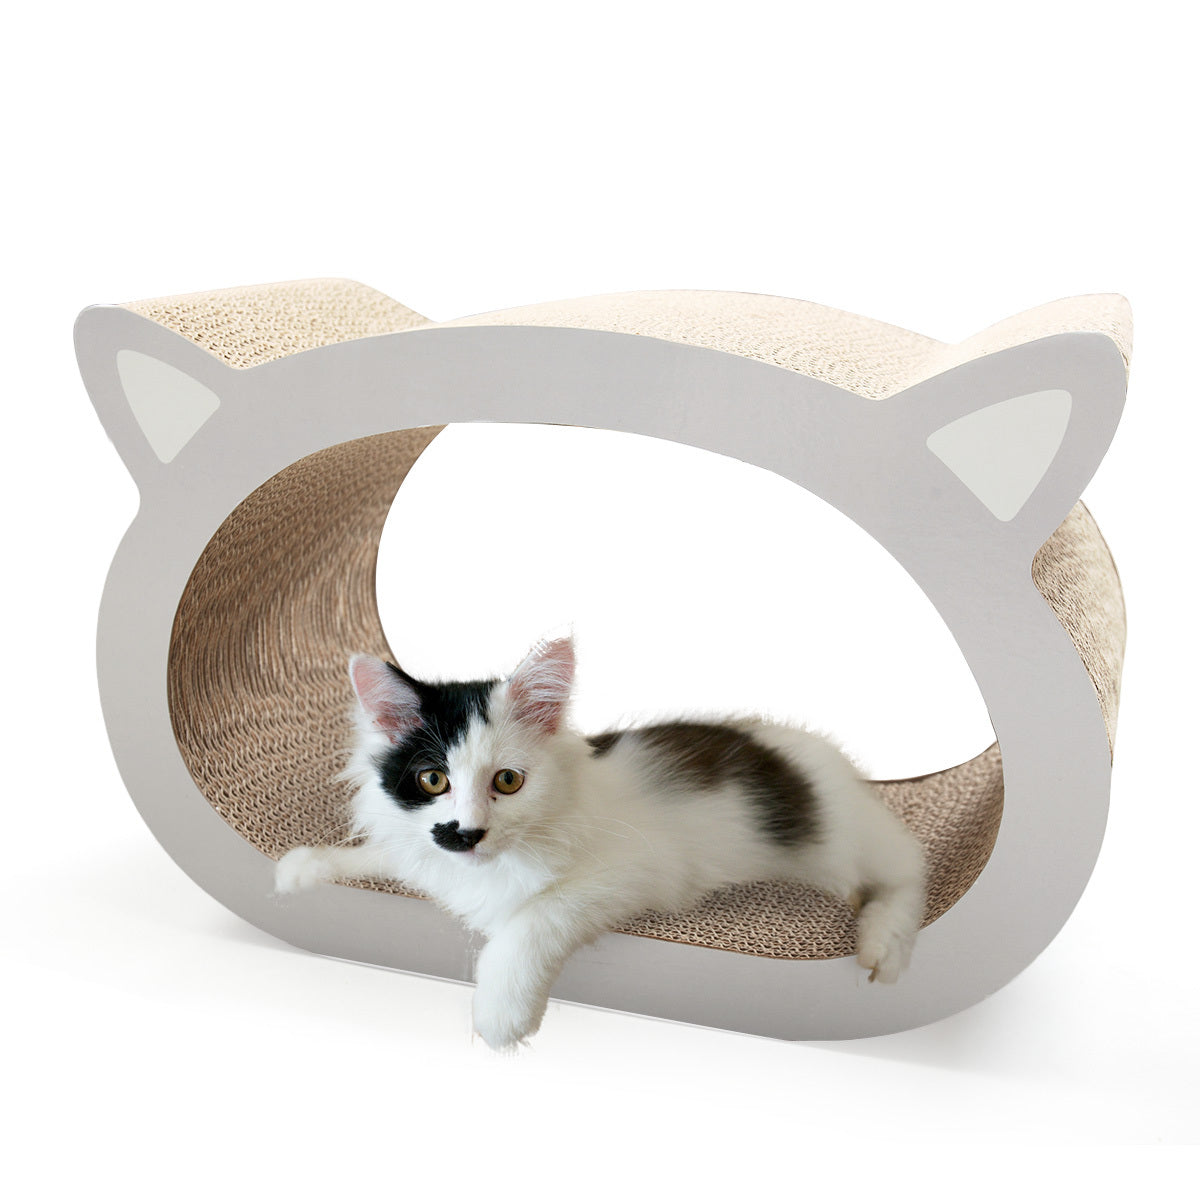 Cat scratcher cat toy corrugated cardboard cute